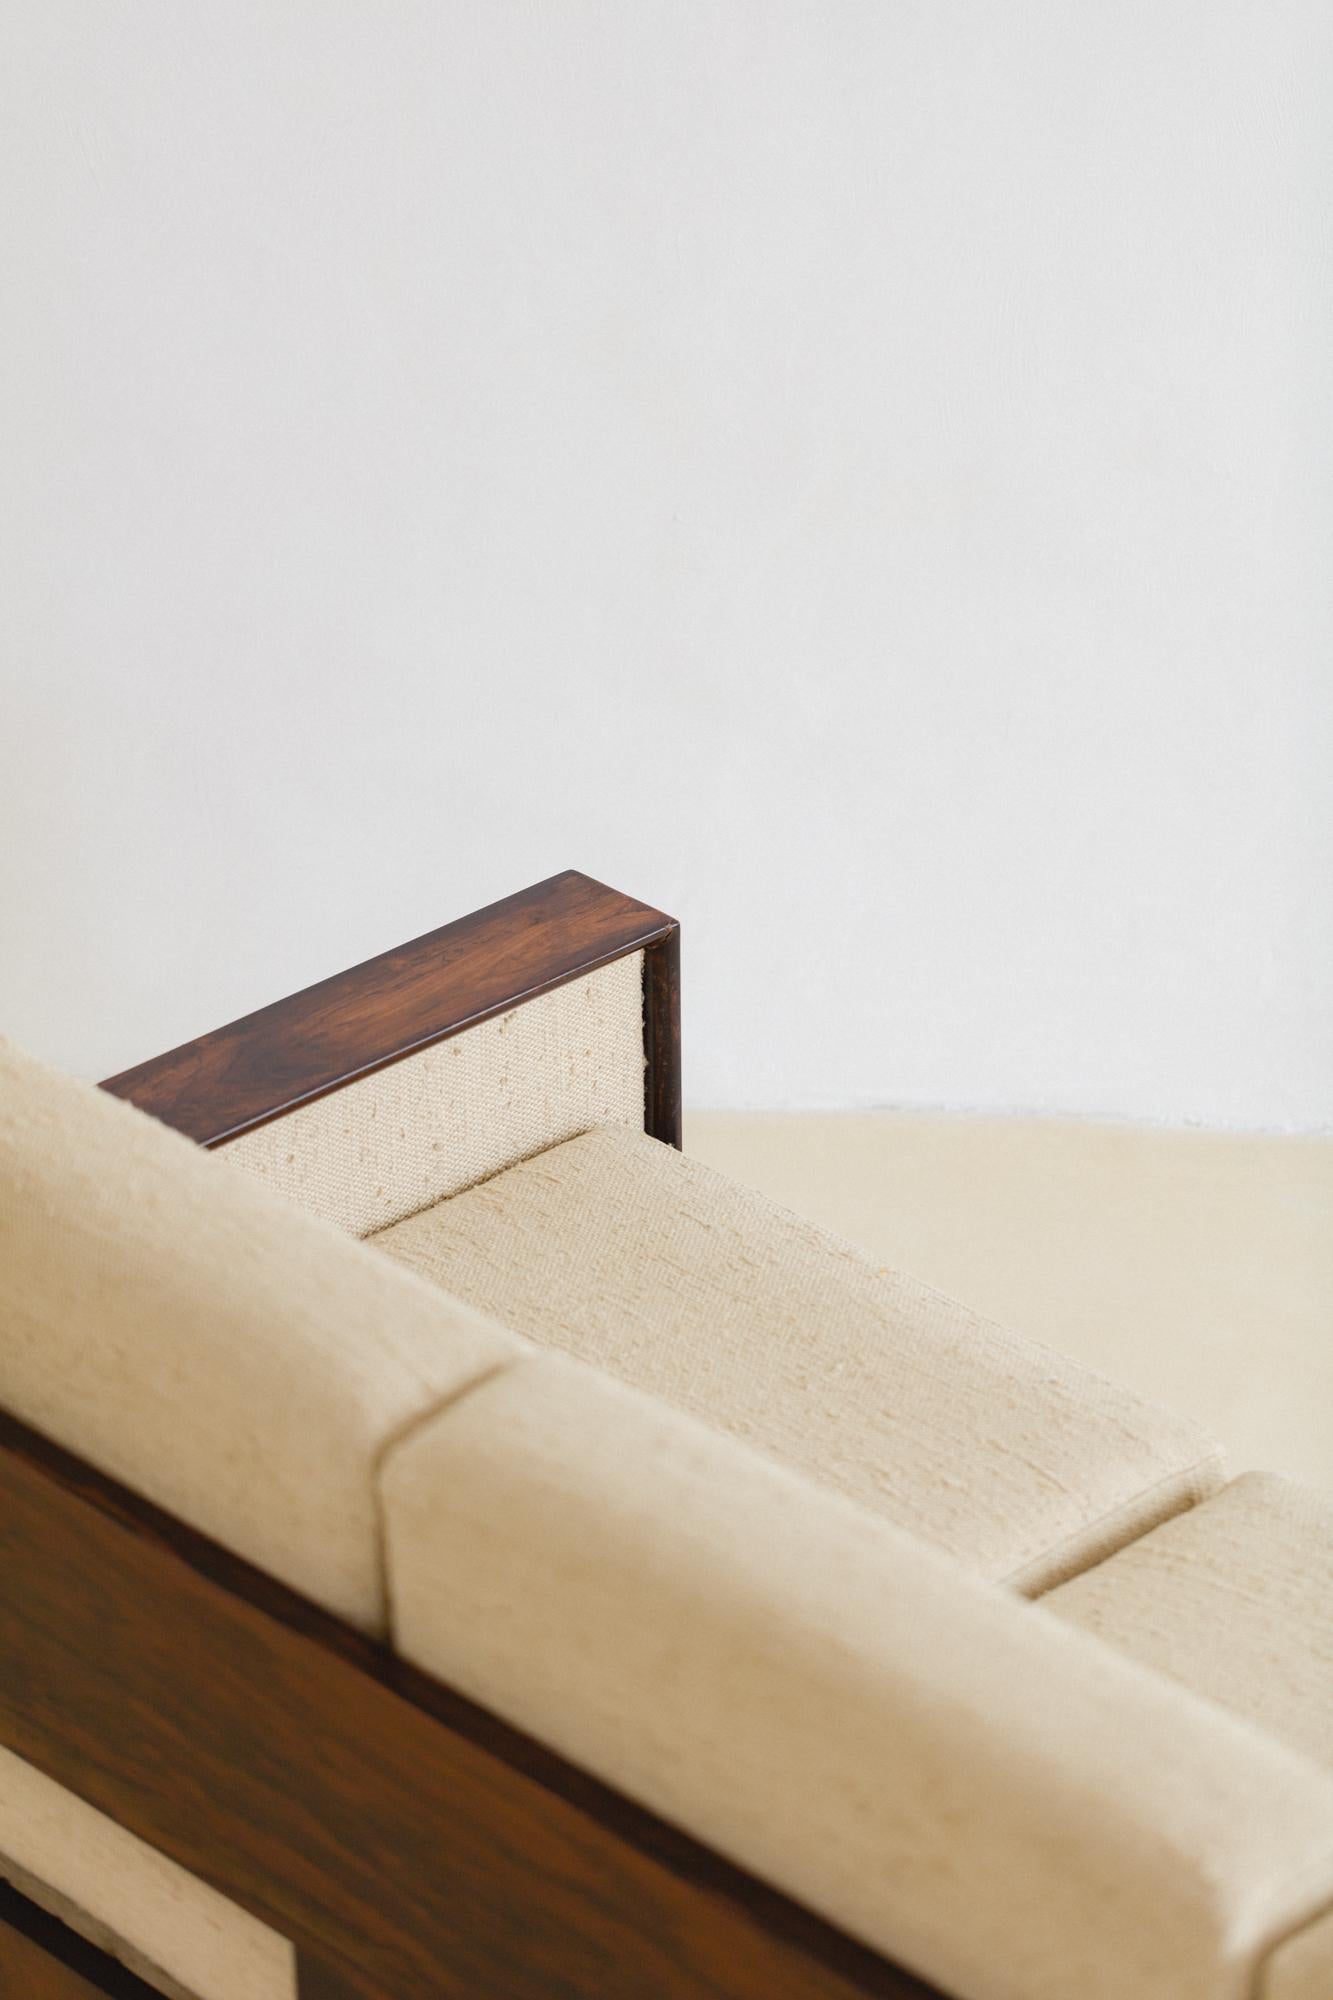 Brazilian Rosewood Sofa by Celina Decorações, Midcentury Brazilian Design, 1960s For Sale 5